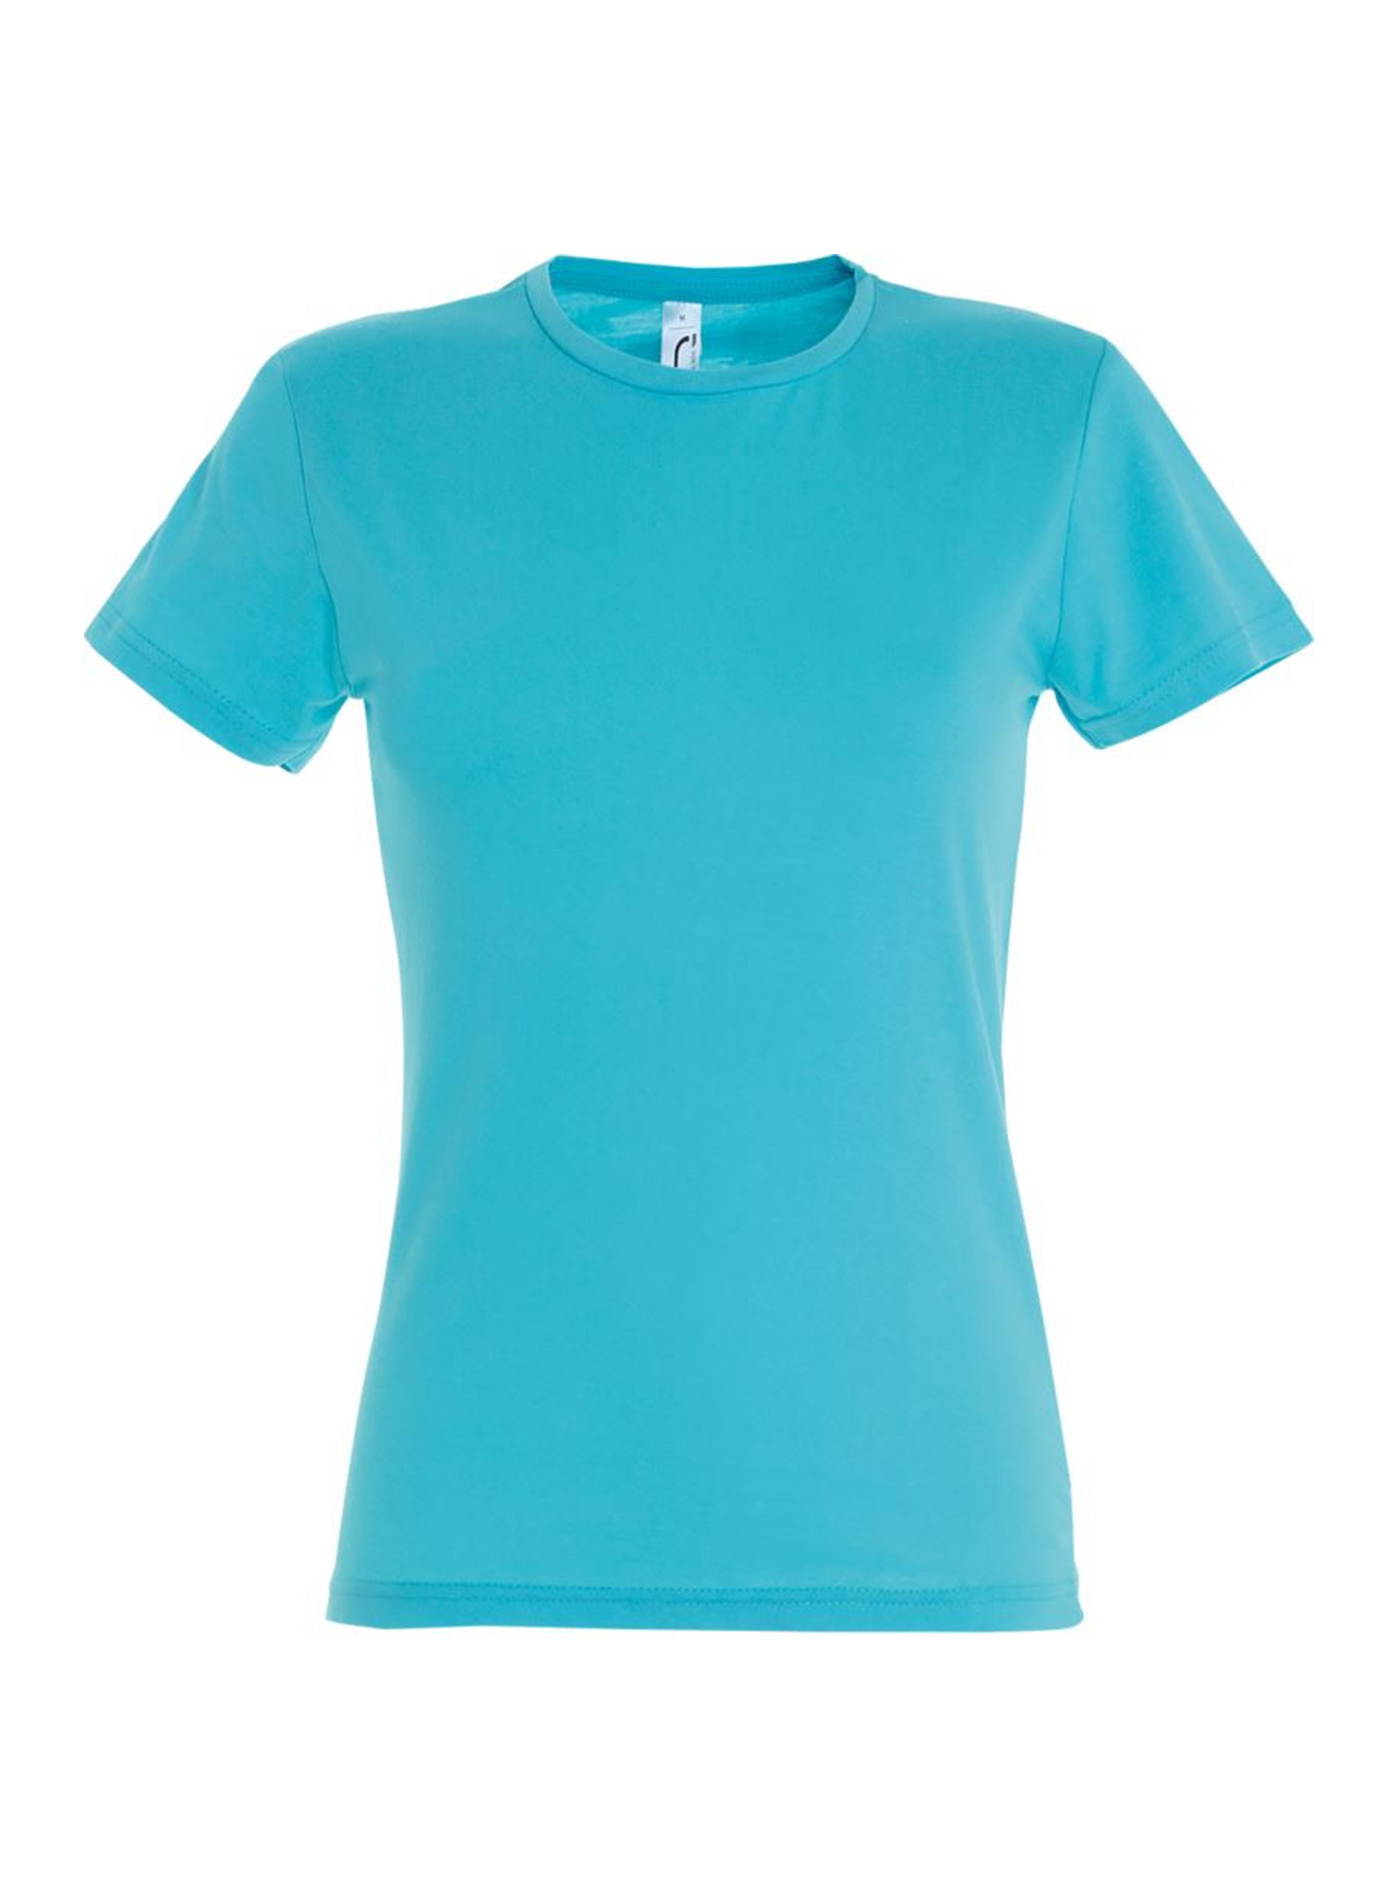 Dámské tričko SOL'S Miss - Azurově modrá žíhaná L